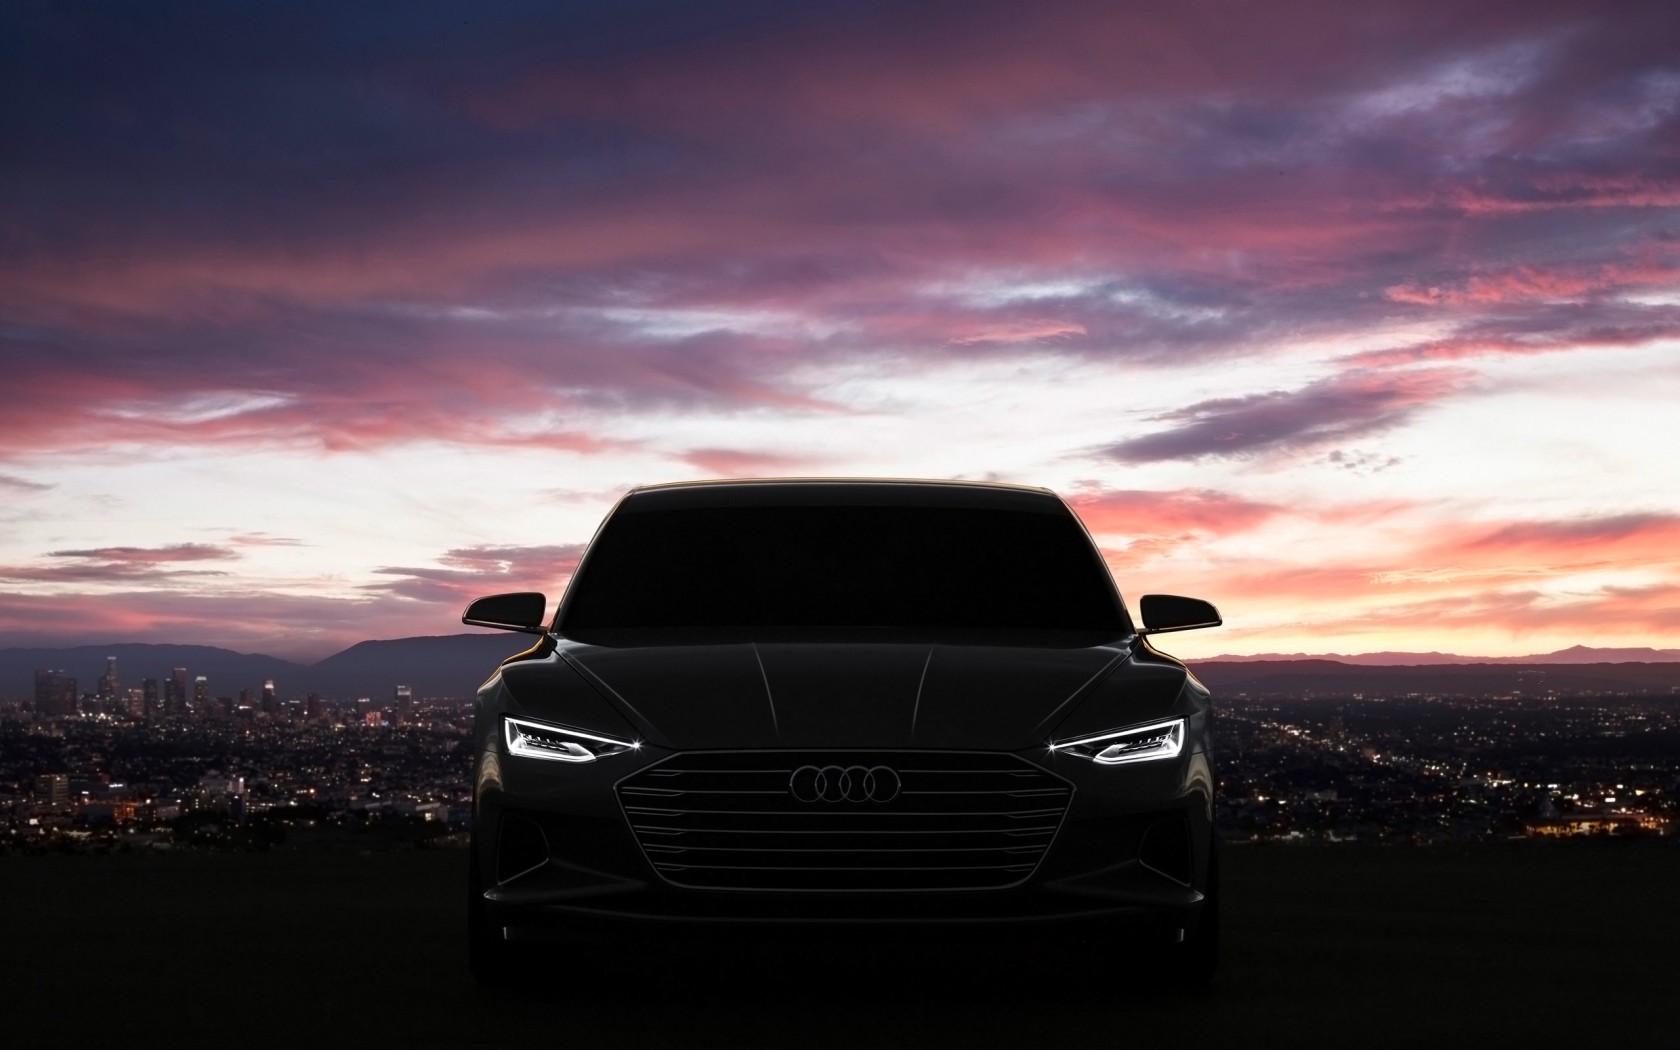 2014 Audi Prologue Concept Wallpaper HD Car Wallpapers